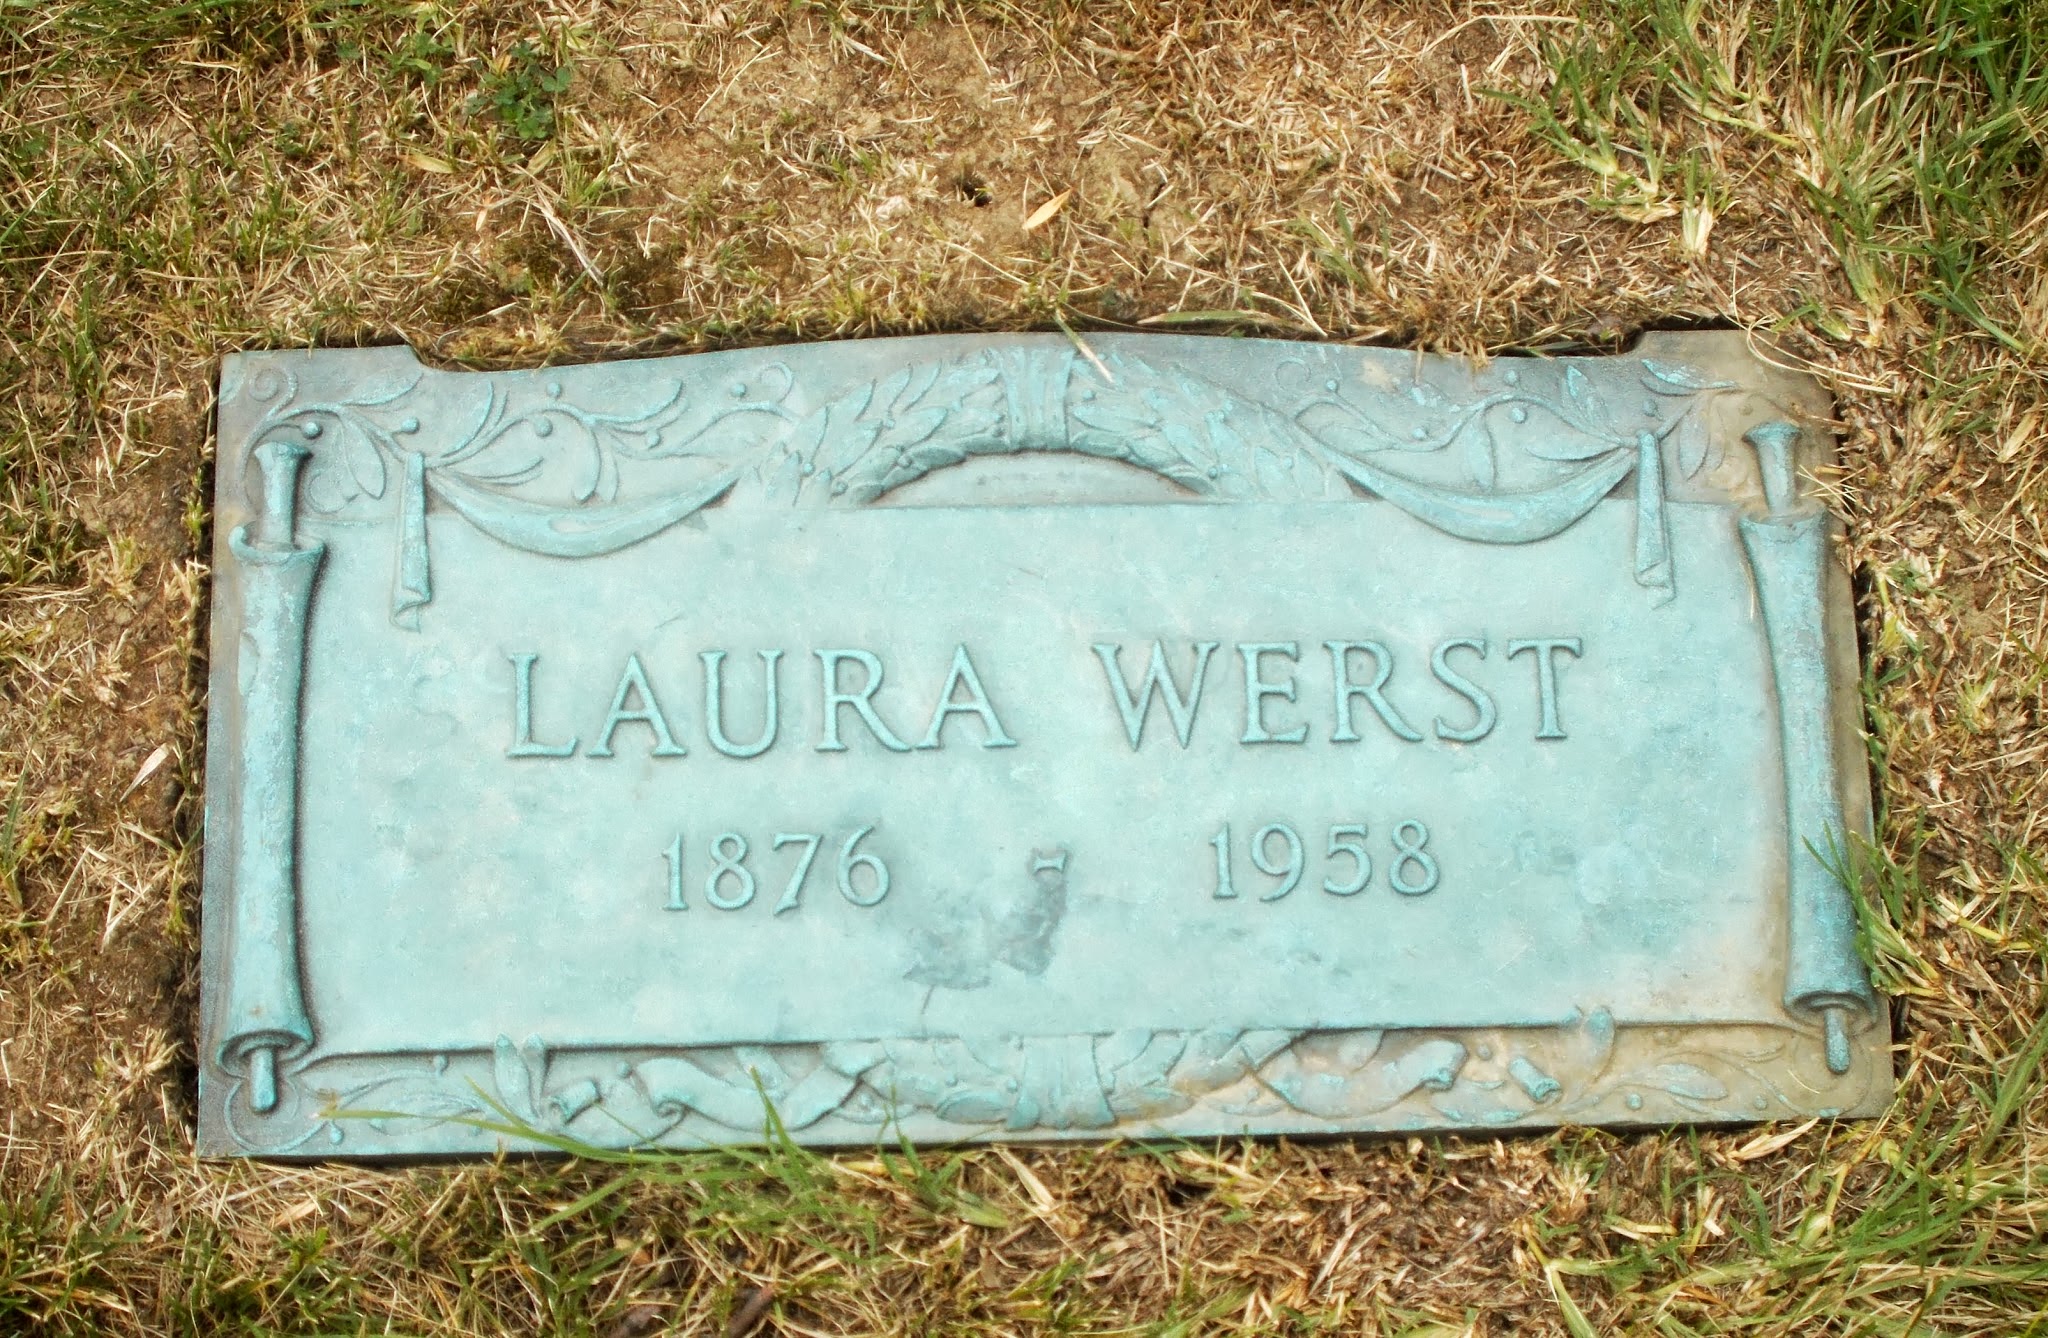 Laura Werst